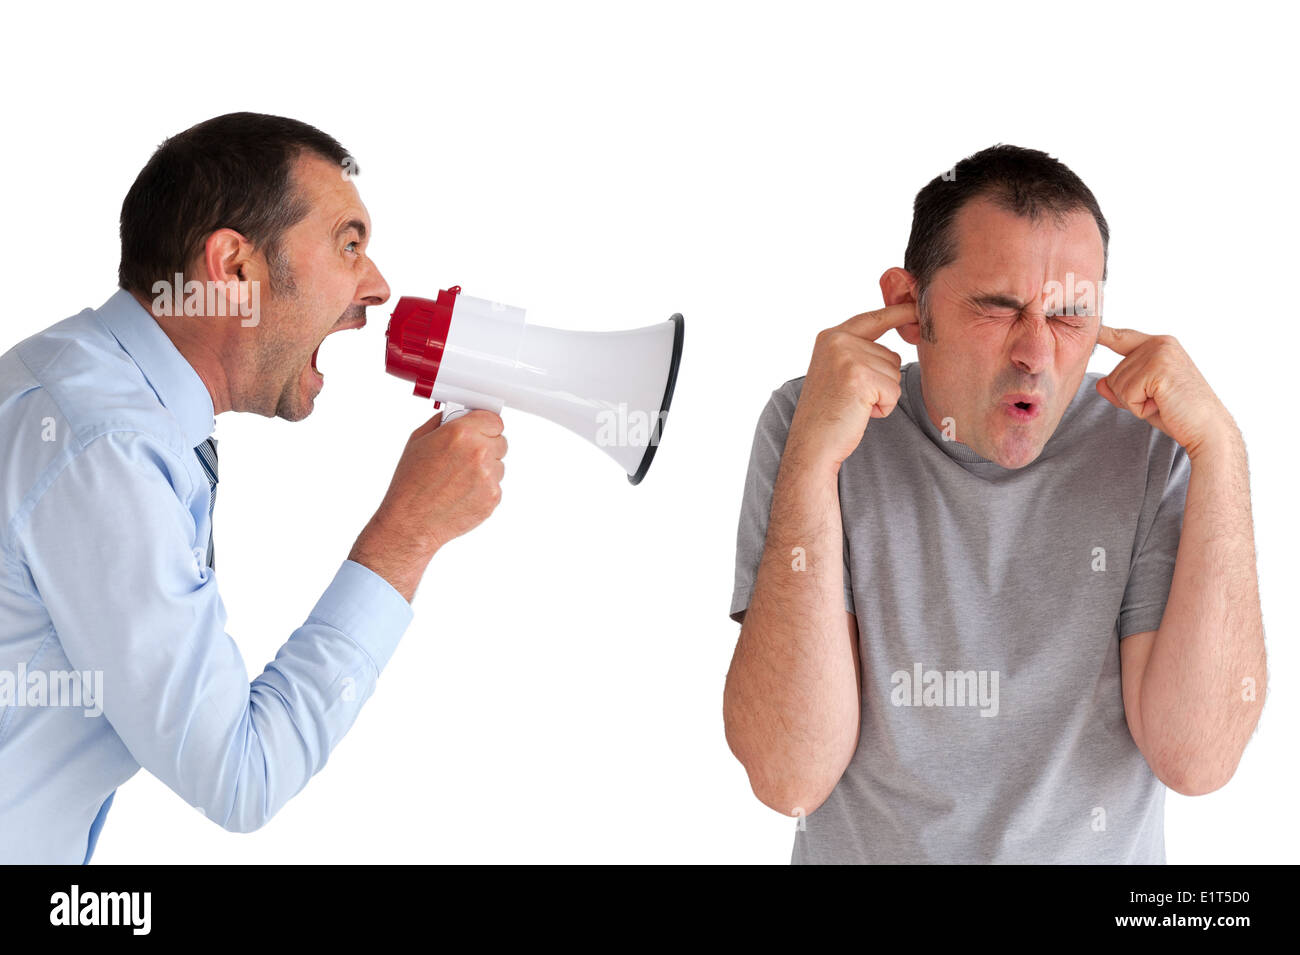 Manager el acoso a un empleado un grito a través de un megáfono para ilustrar el concepto de acoso laboral Foto de stock